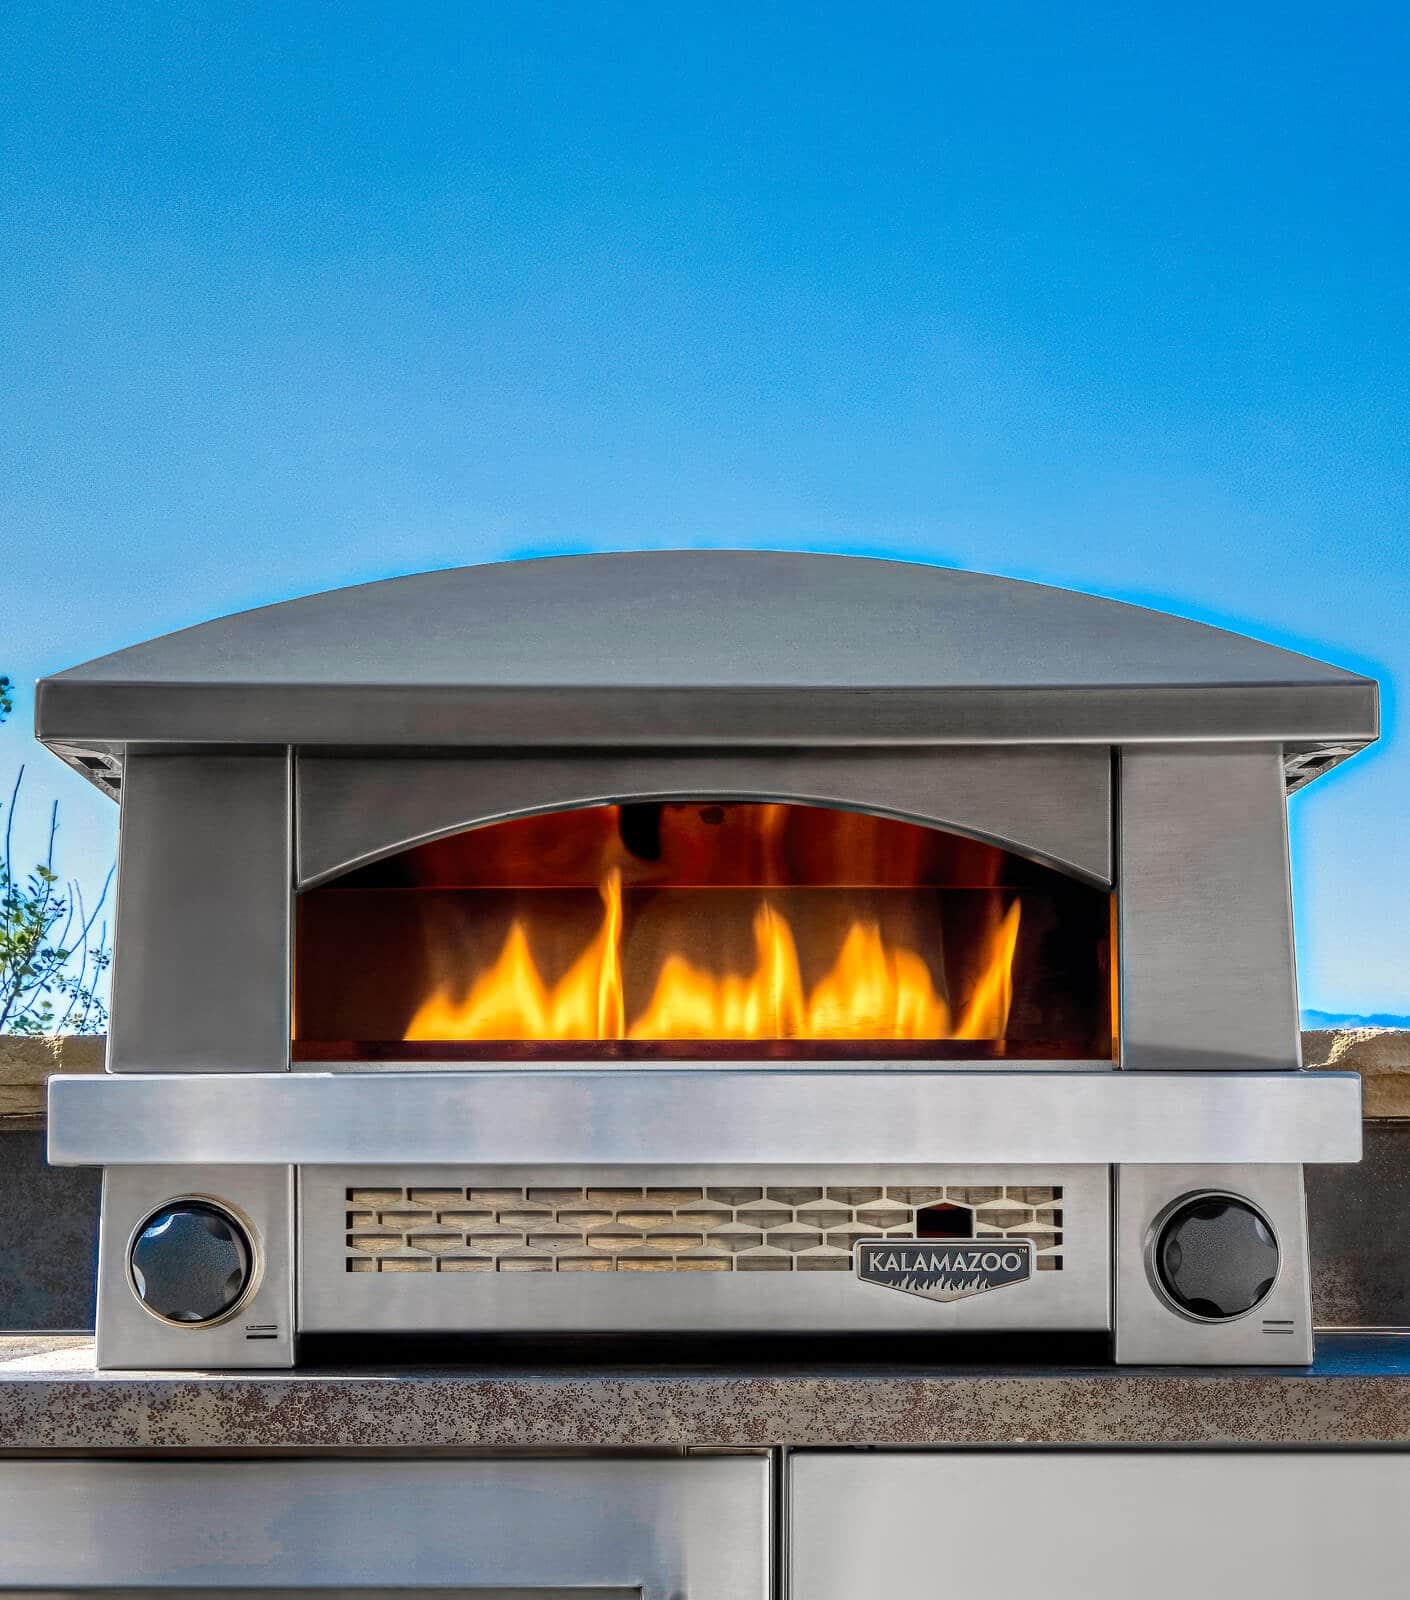 https://www.grillseeker.com/wp-content/uploads/2022/10/Kalamazoo-artisan-fire-pizza-oven-feature.jpg